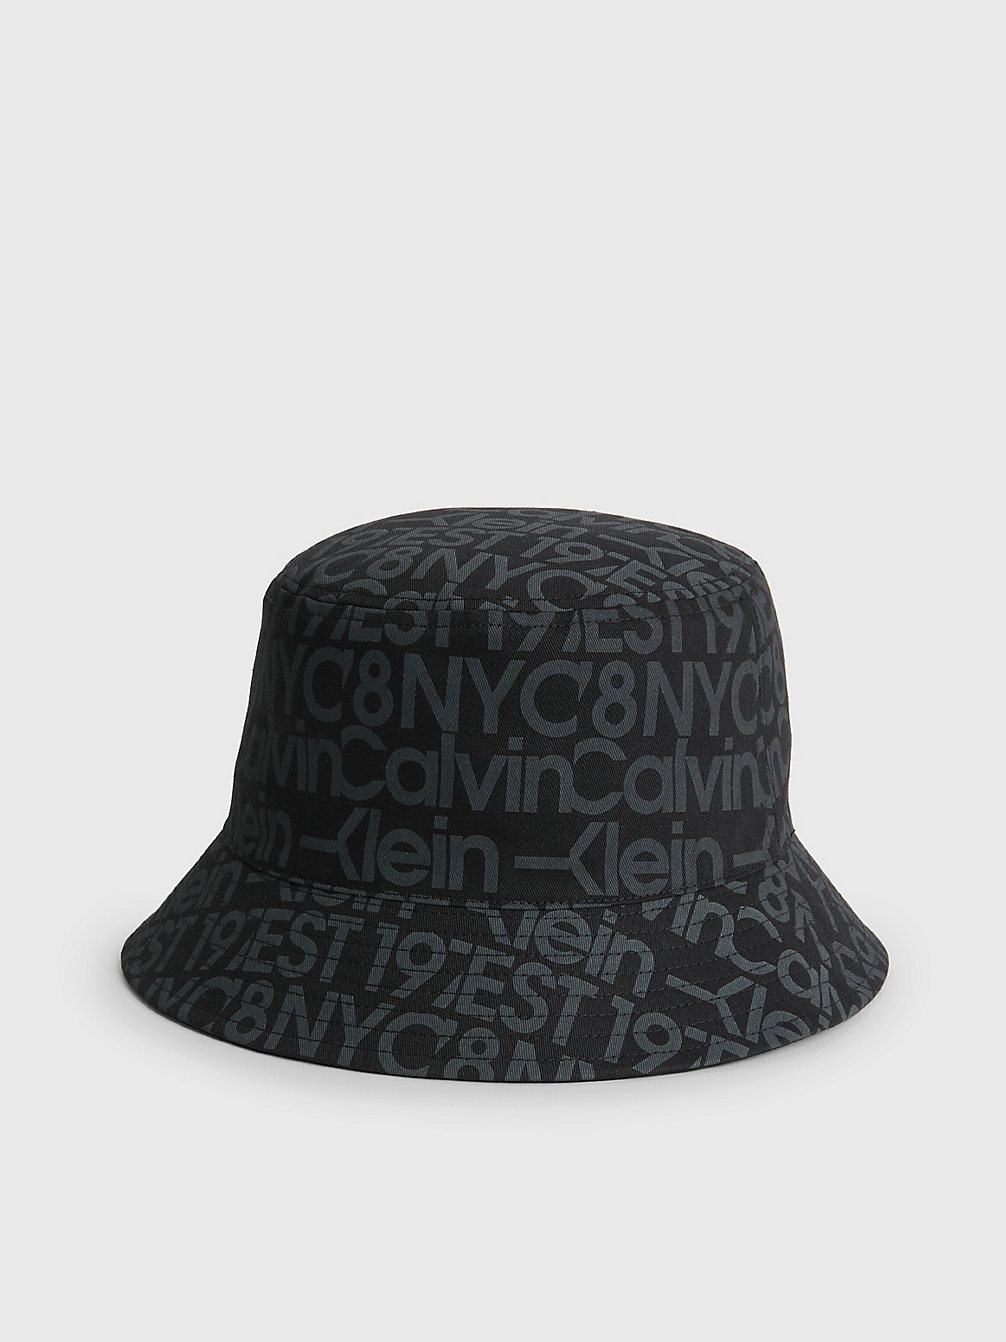 BLACK/OVERCAST GREY > Kapelusz Typu Bucket Hat Z Bawełny Organicznej > undefined Mężczyźni - Calvin Klein